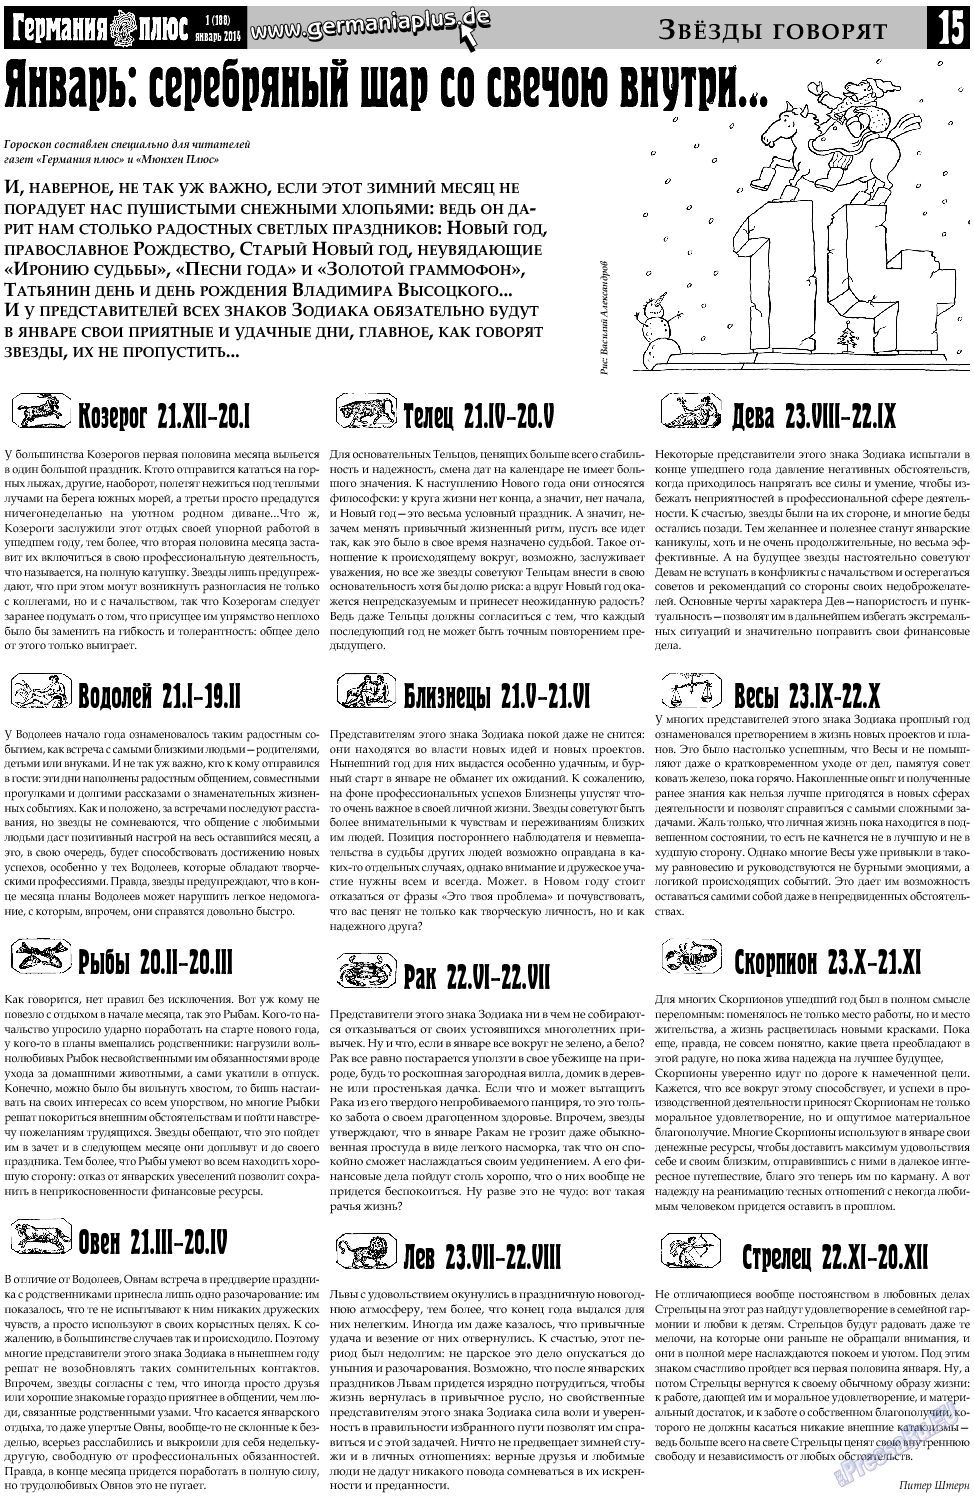 Германия плюс, газета. 2014 №1 стр.15